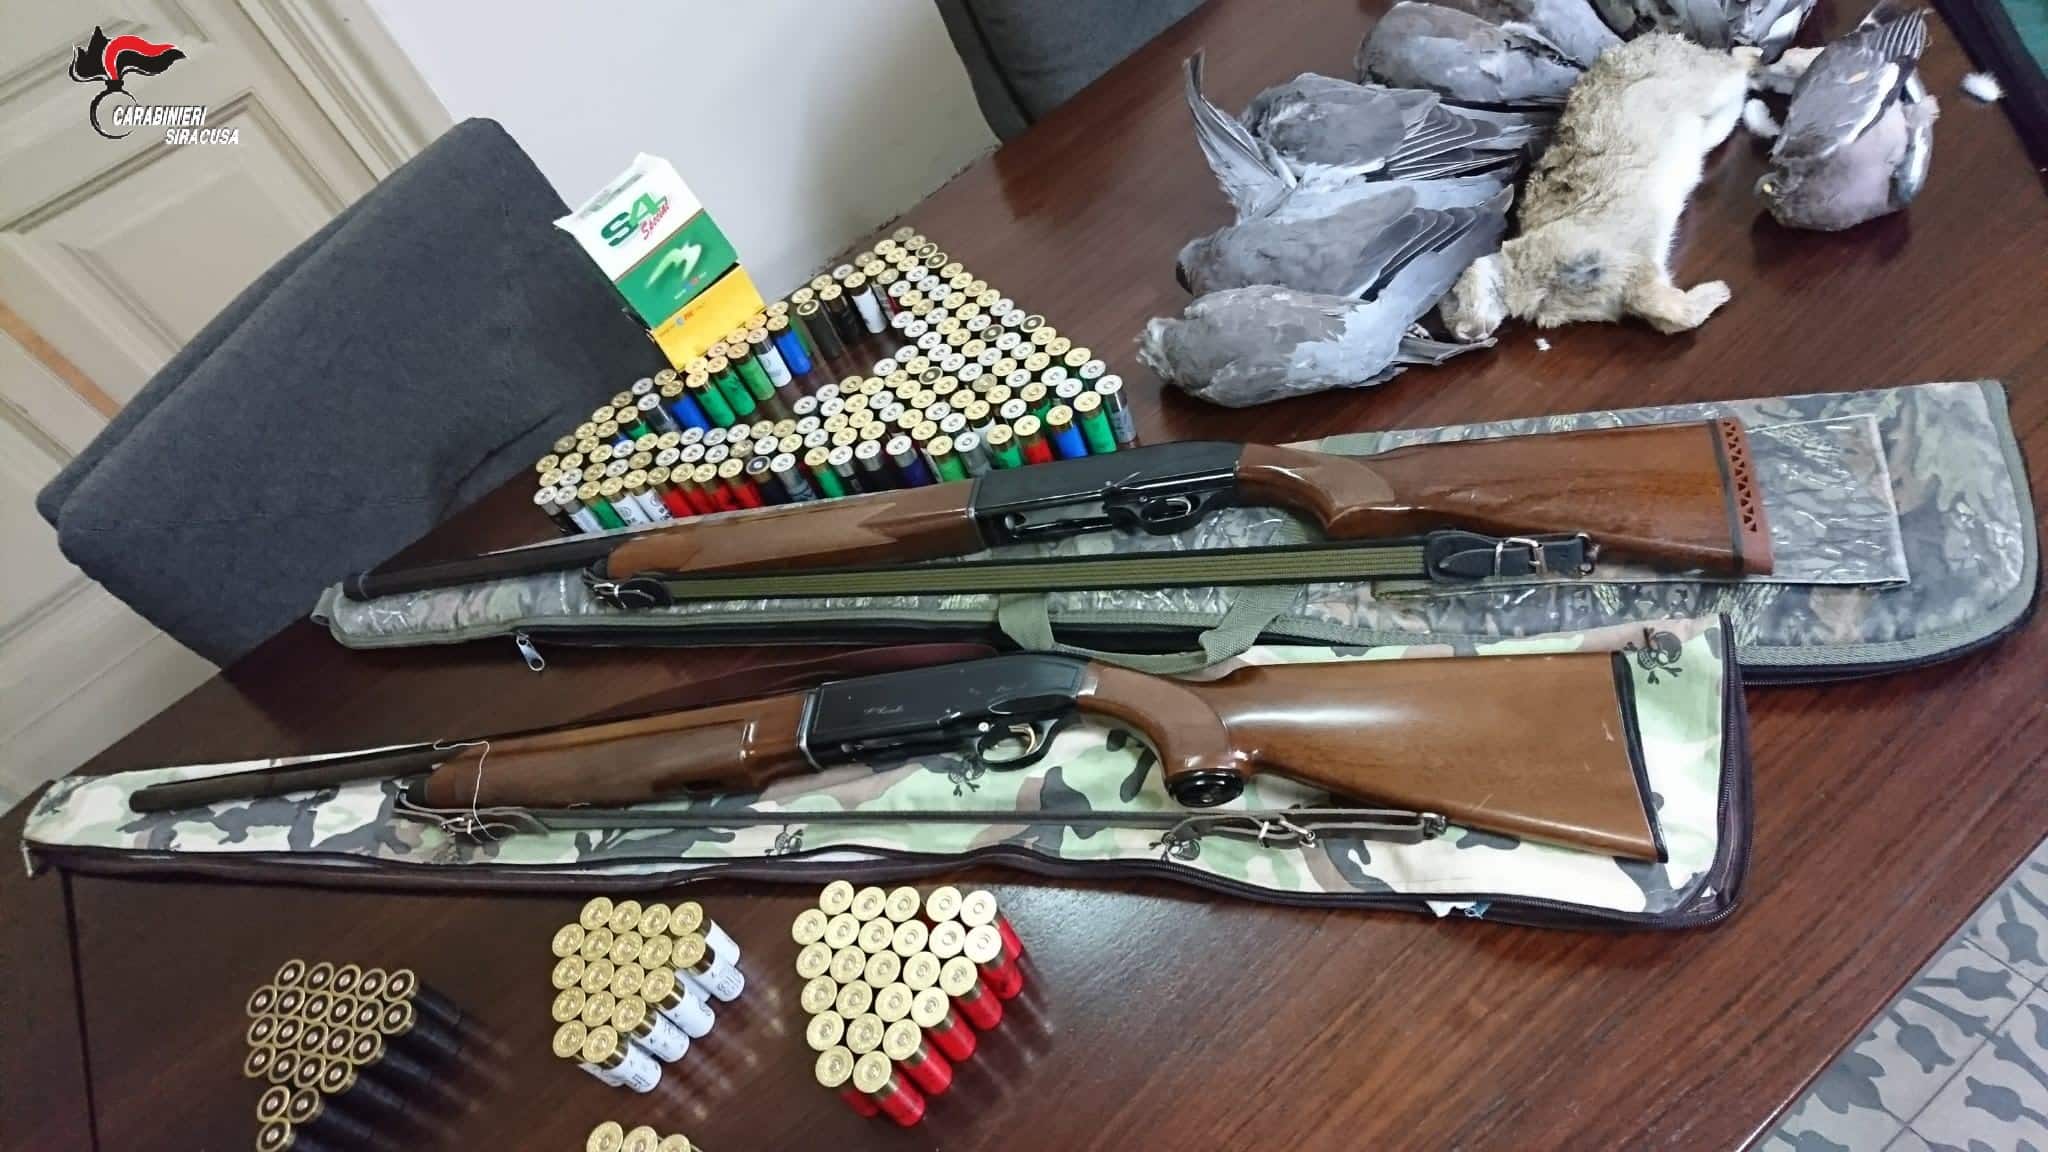 A caccia nonostante il divieto del Tar di Catania: denunciati 4 soggetti, fucili e munizioni sequestrati